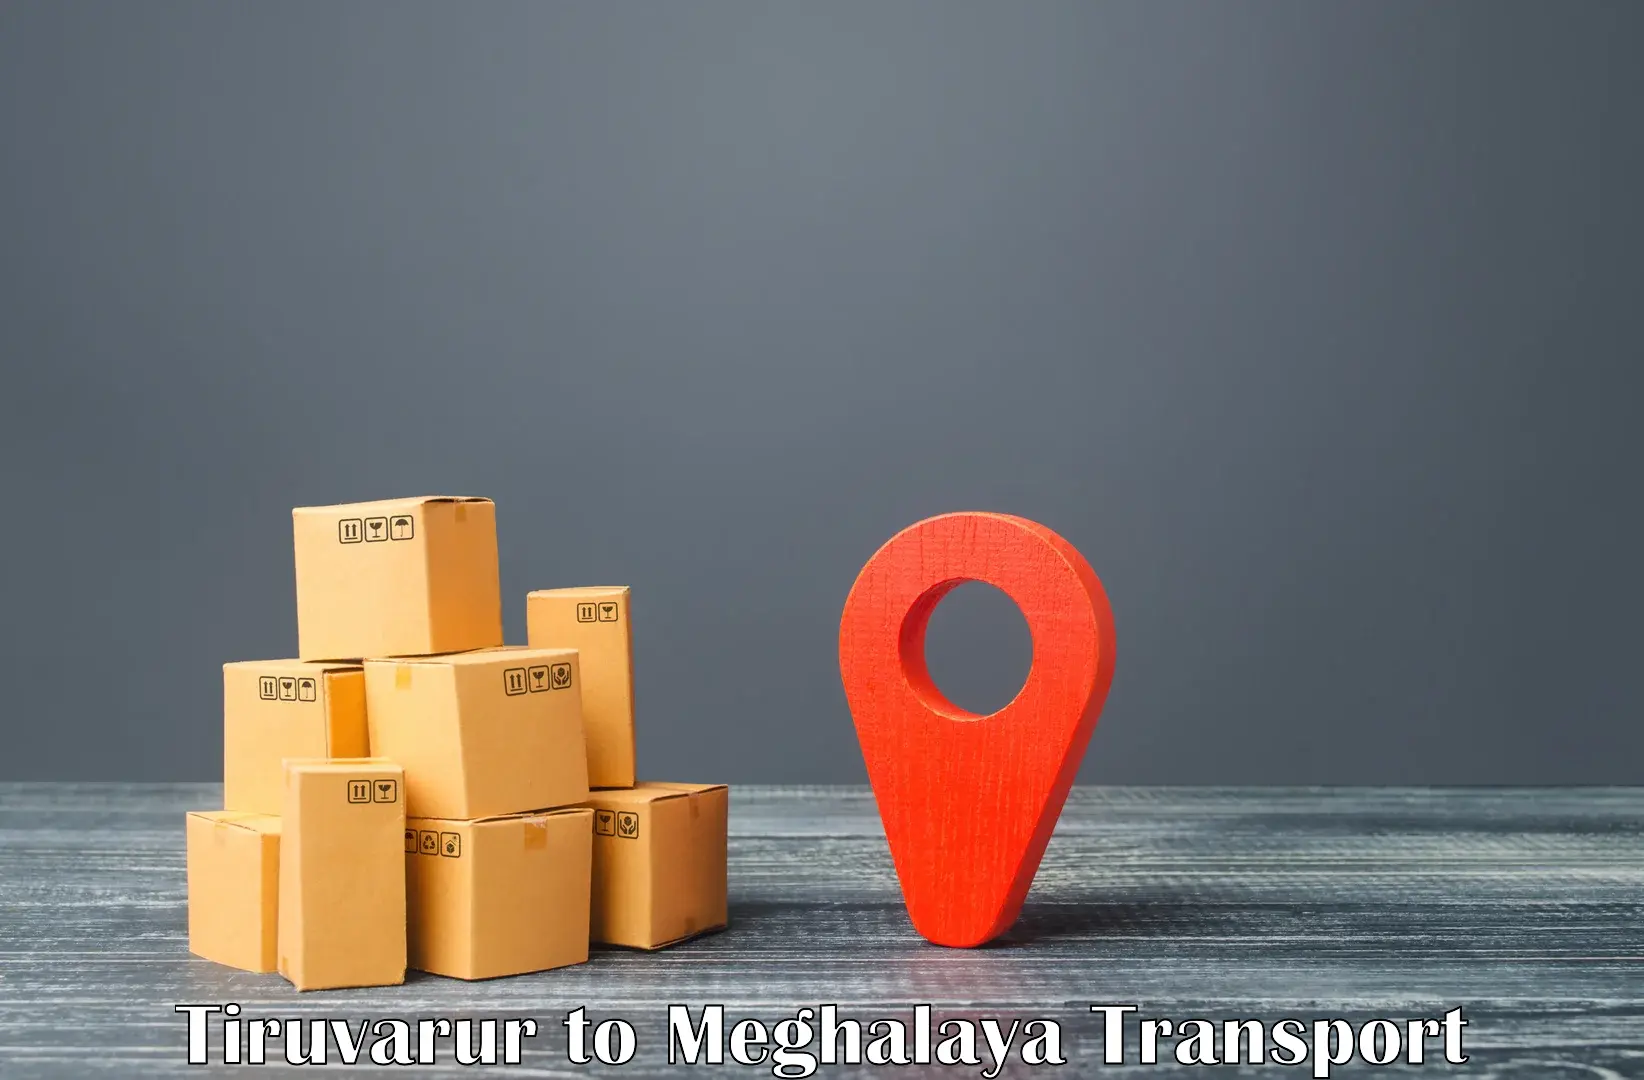 Transport services in Tiruvarur to Meghalaya